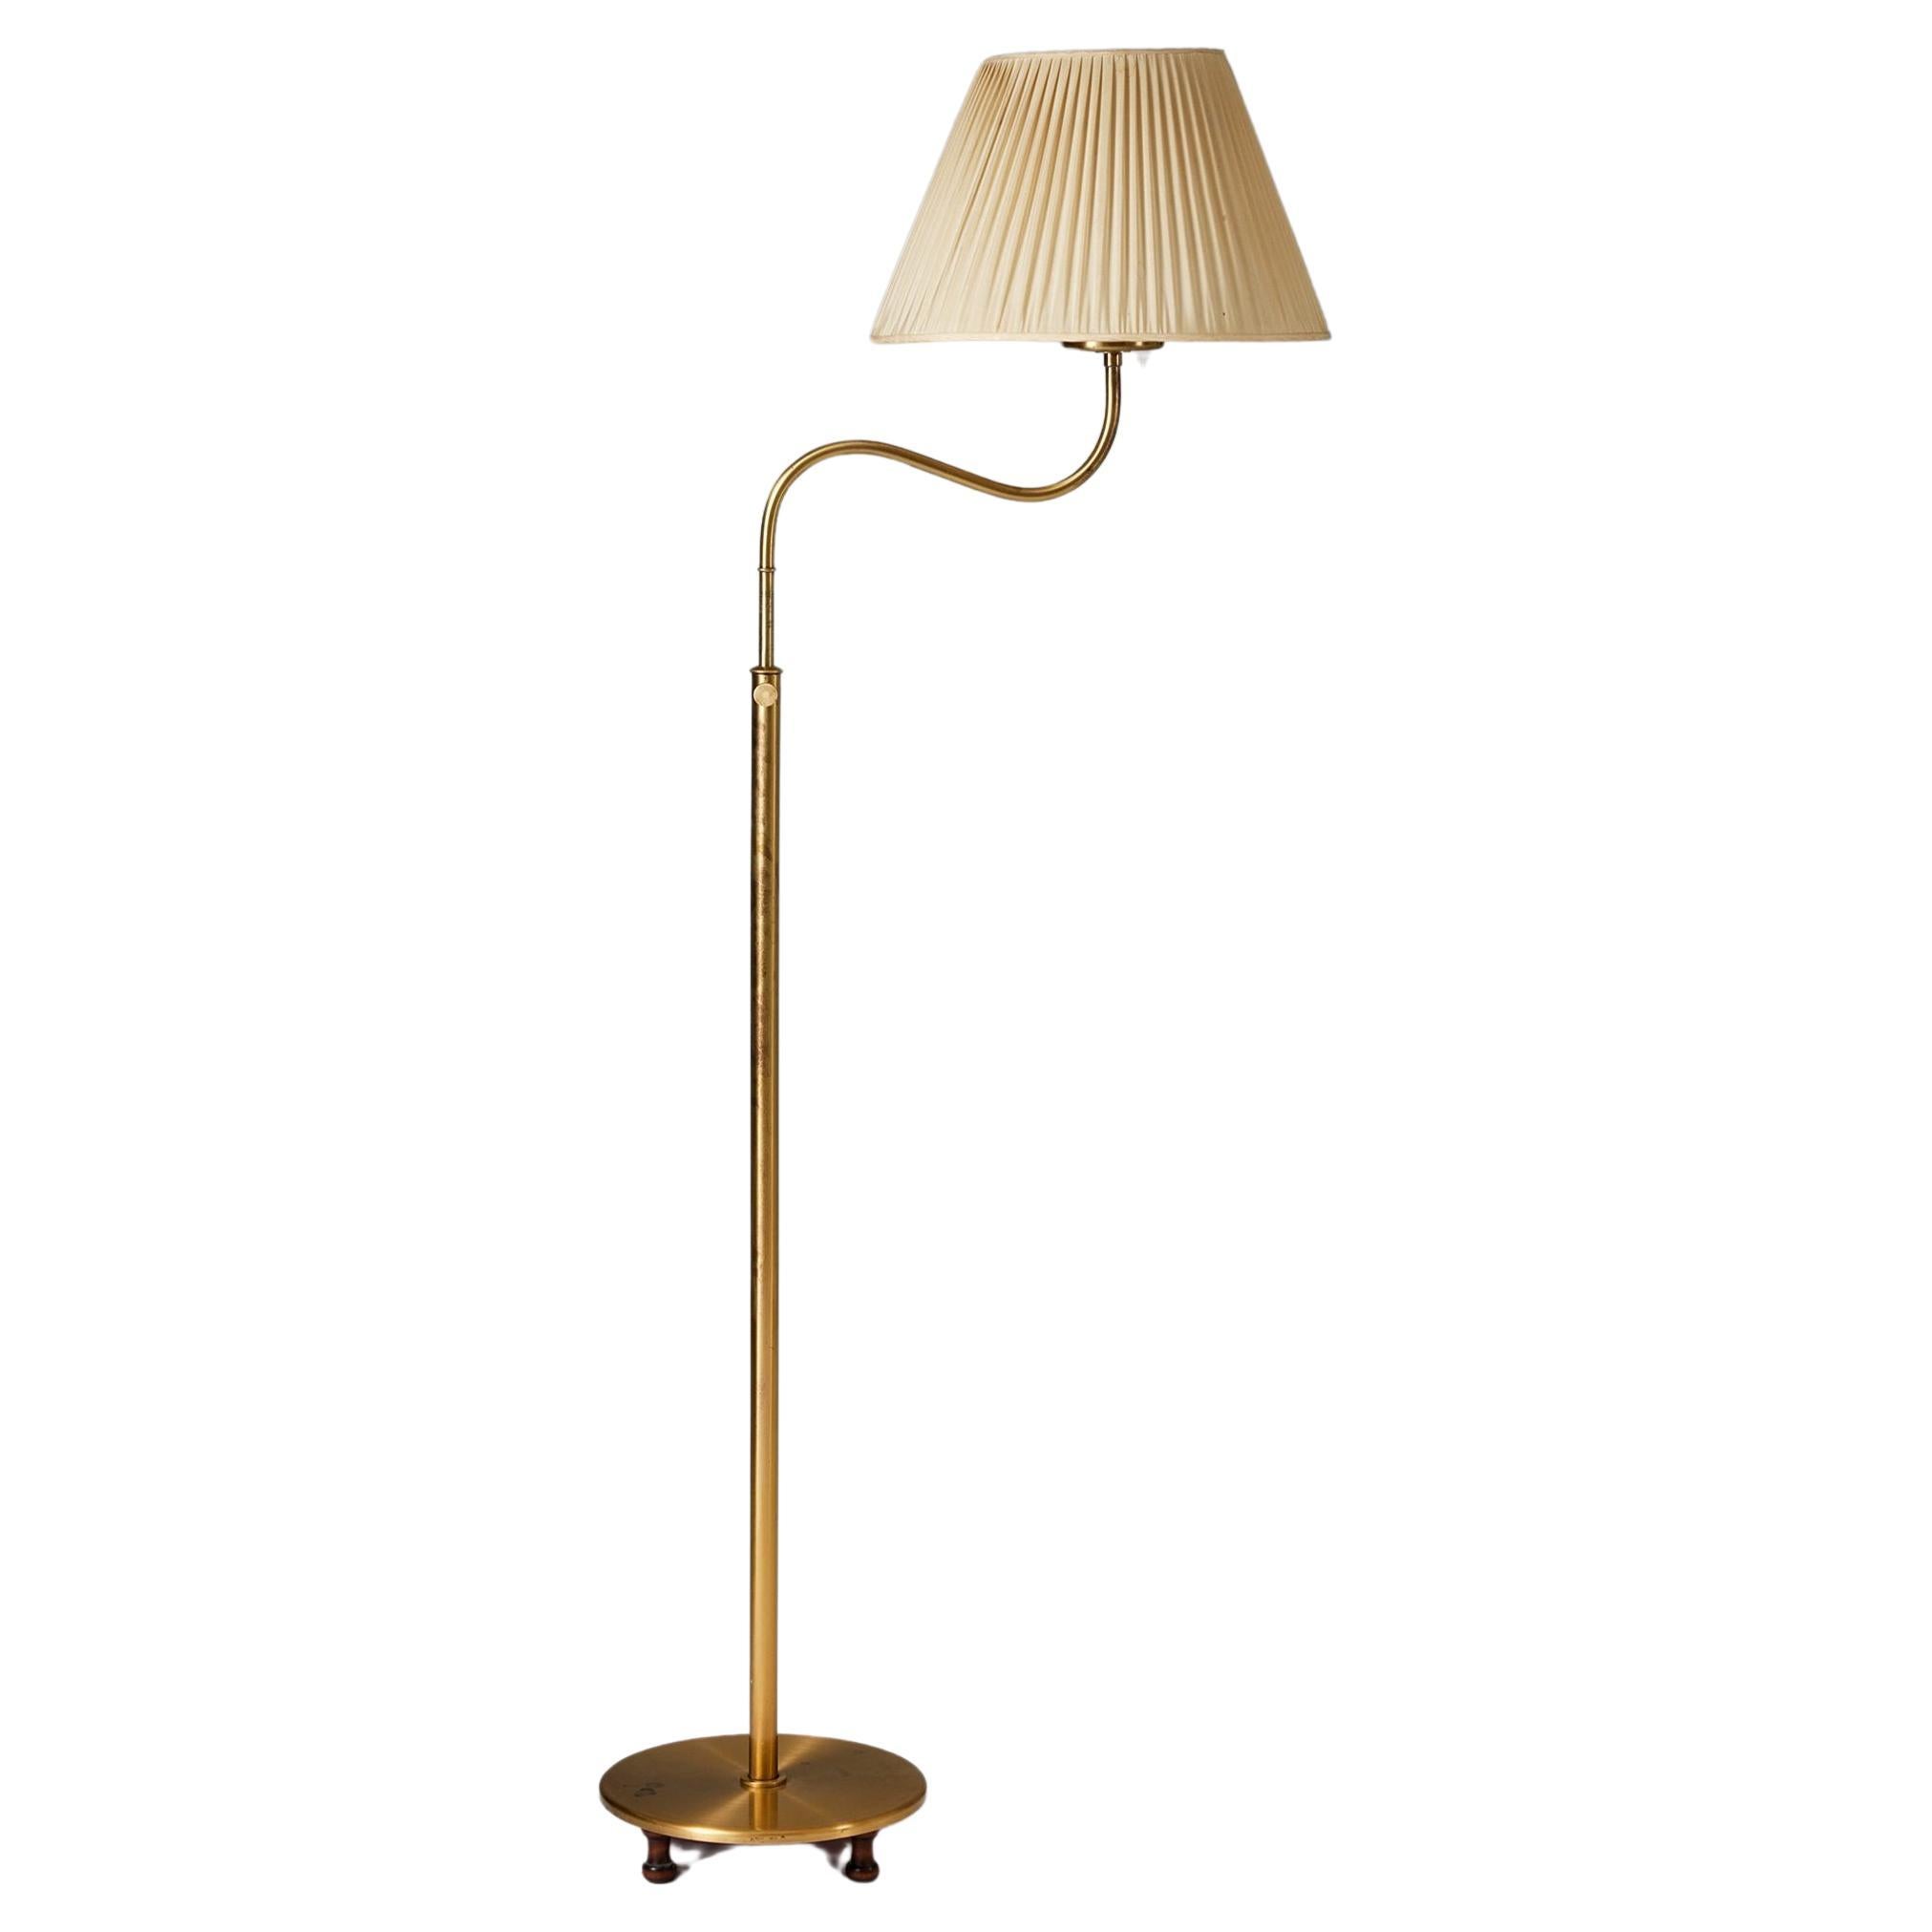 Brass floor lamp ‘Small Camel’ model 2568 by Josef Frank for Svenskt Tenn, 1939